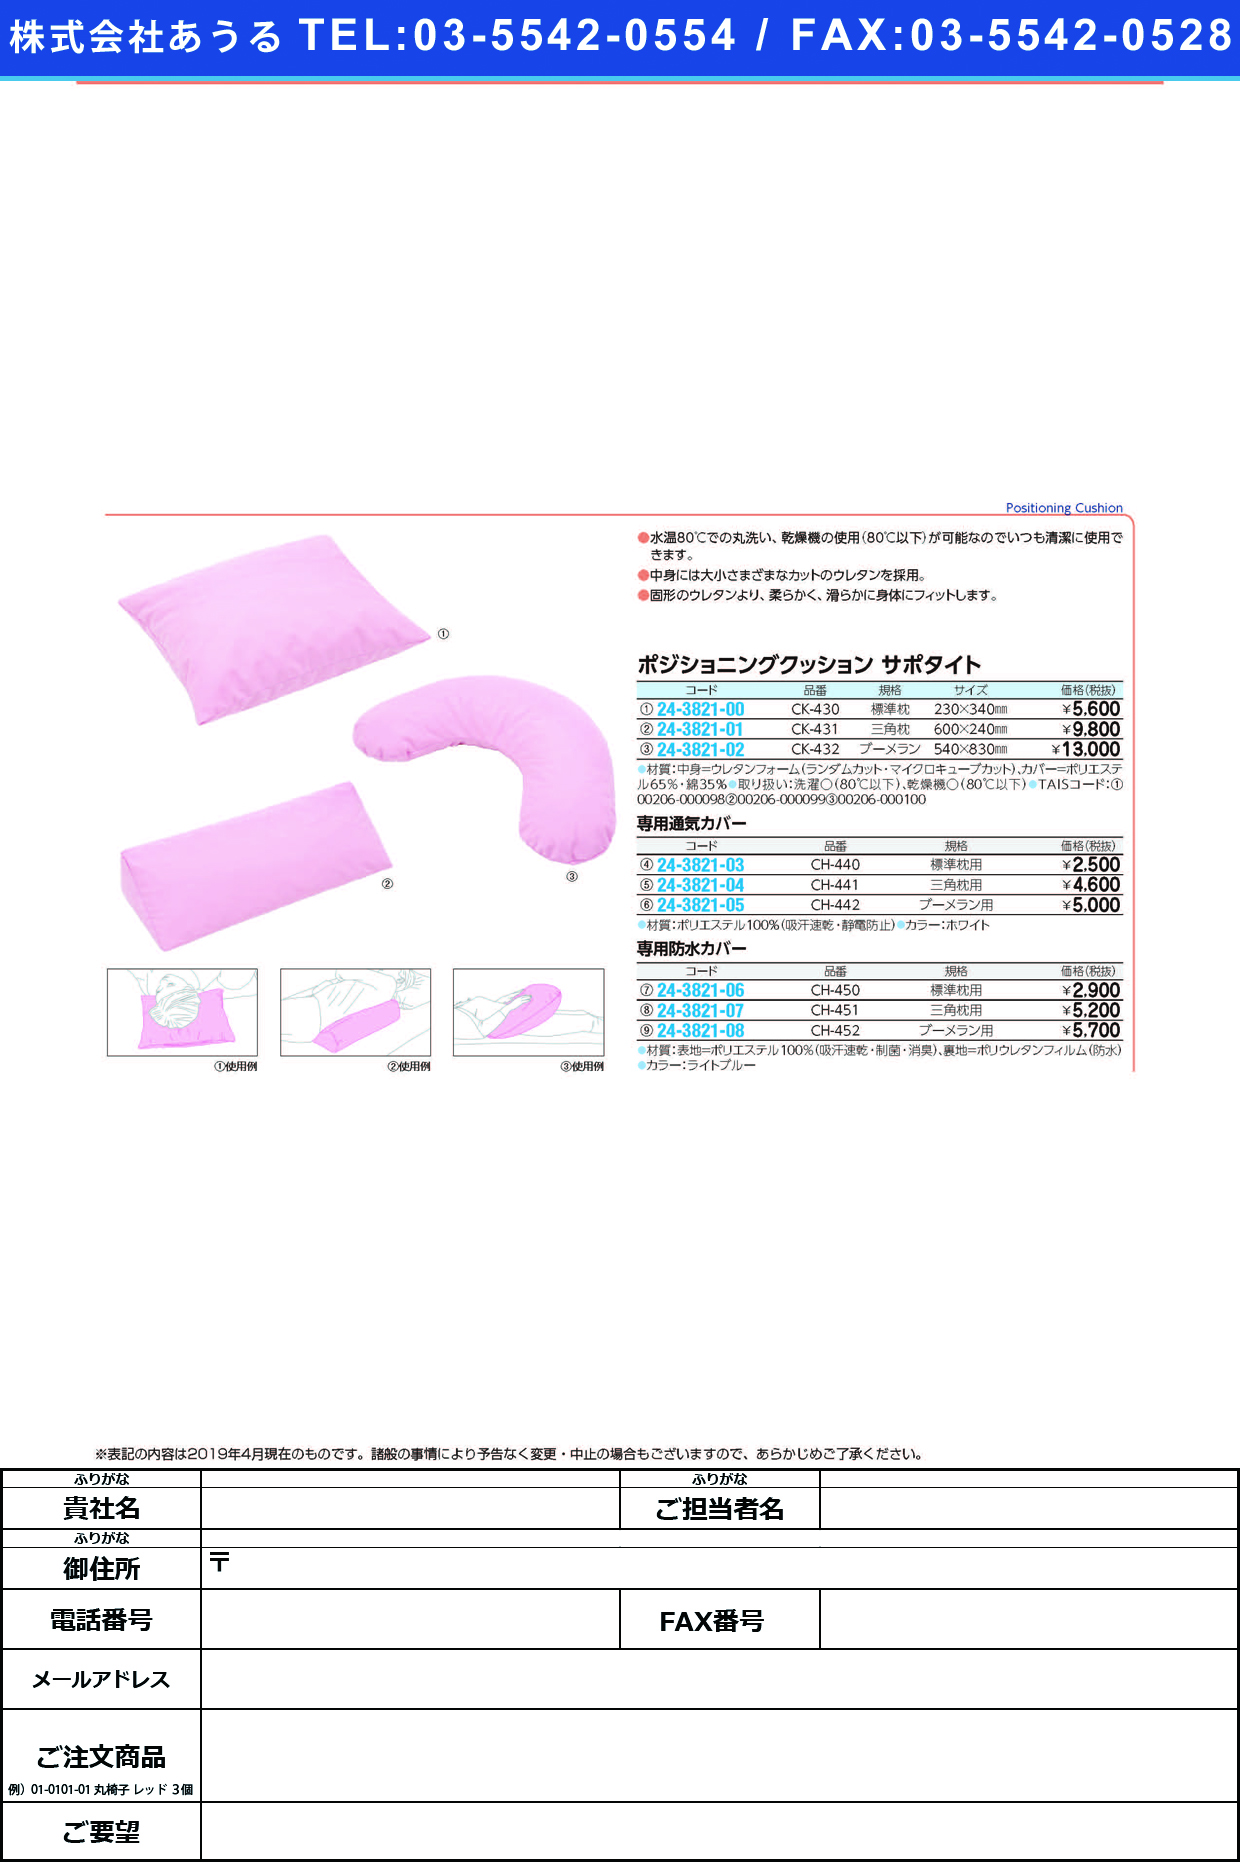 (24-3821-00)ポジショニングクッションサポタイト CK-430(ﾋｮｳｼﾞｭﾝﾏｸﾗ) ﾎﾟｼﾞｼｮﾆﾝｸﾞｸｯｼｮﾝｻﾎﾟﾀｲ(ケープ)【1個単位】【2019年カタログ商品】